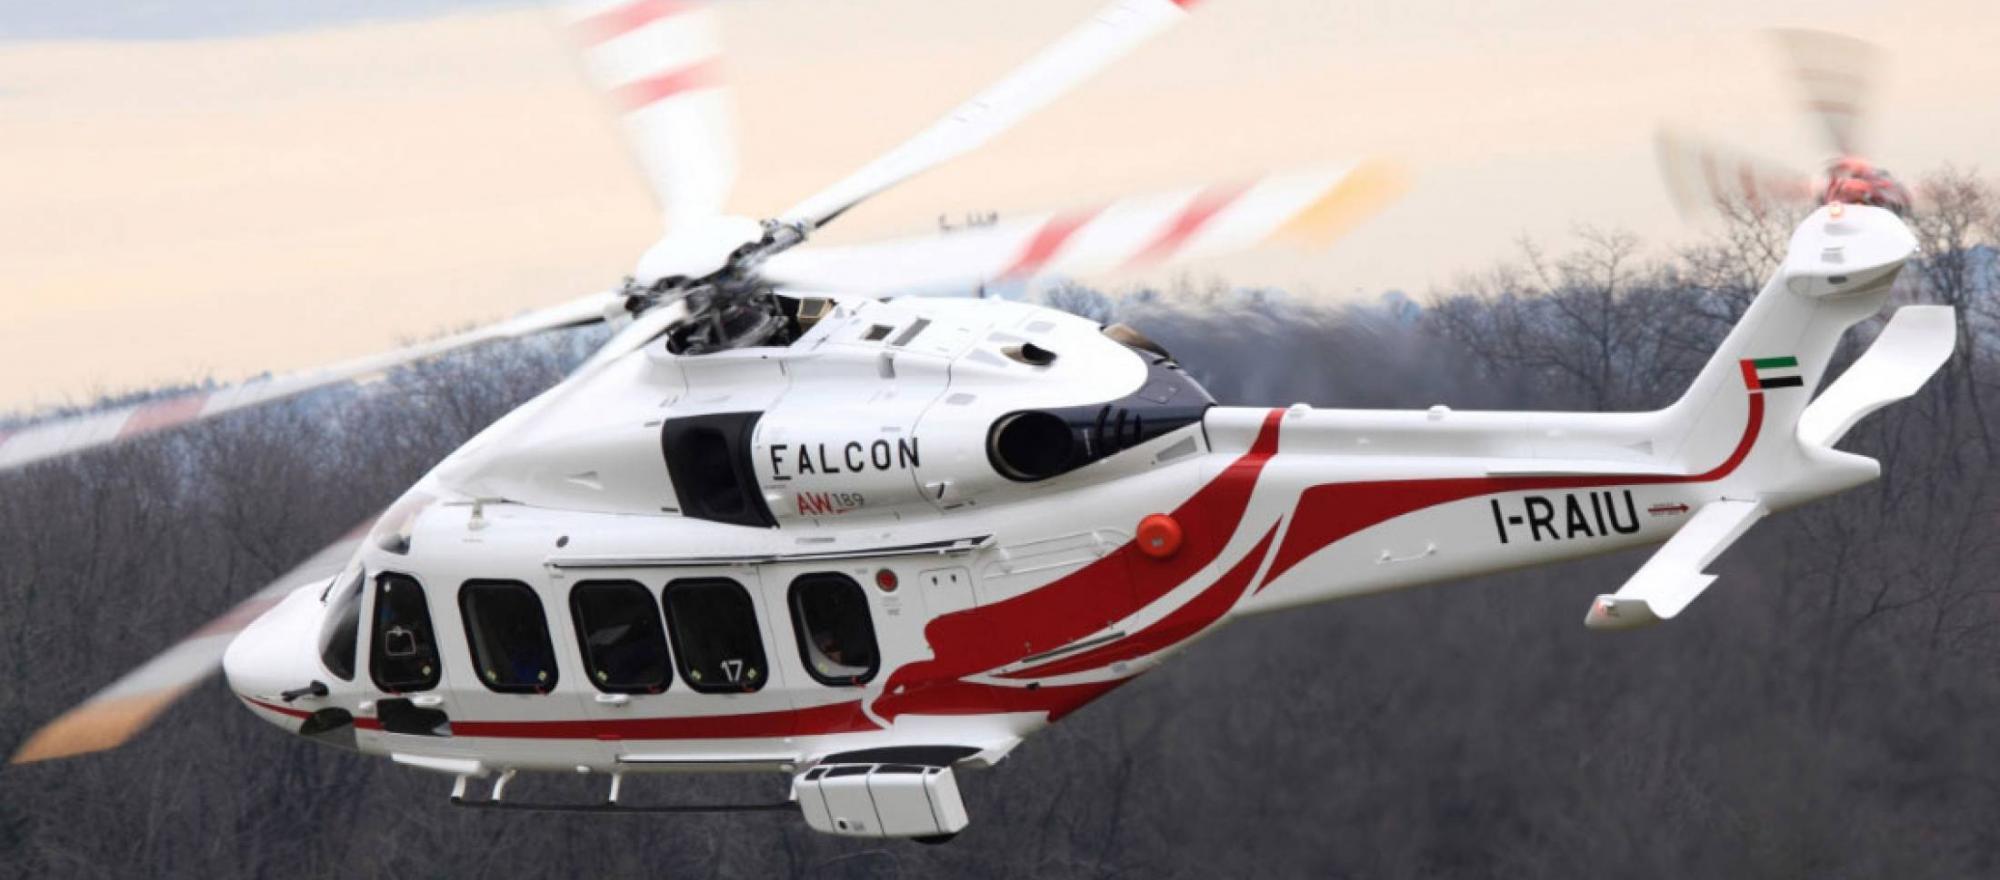 Leonardo Helicopters Logo - Leonardo Helicopters. Business Jet Traveler